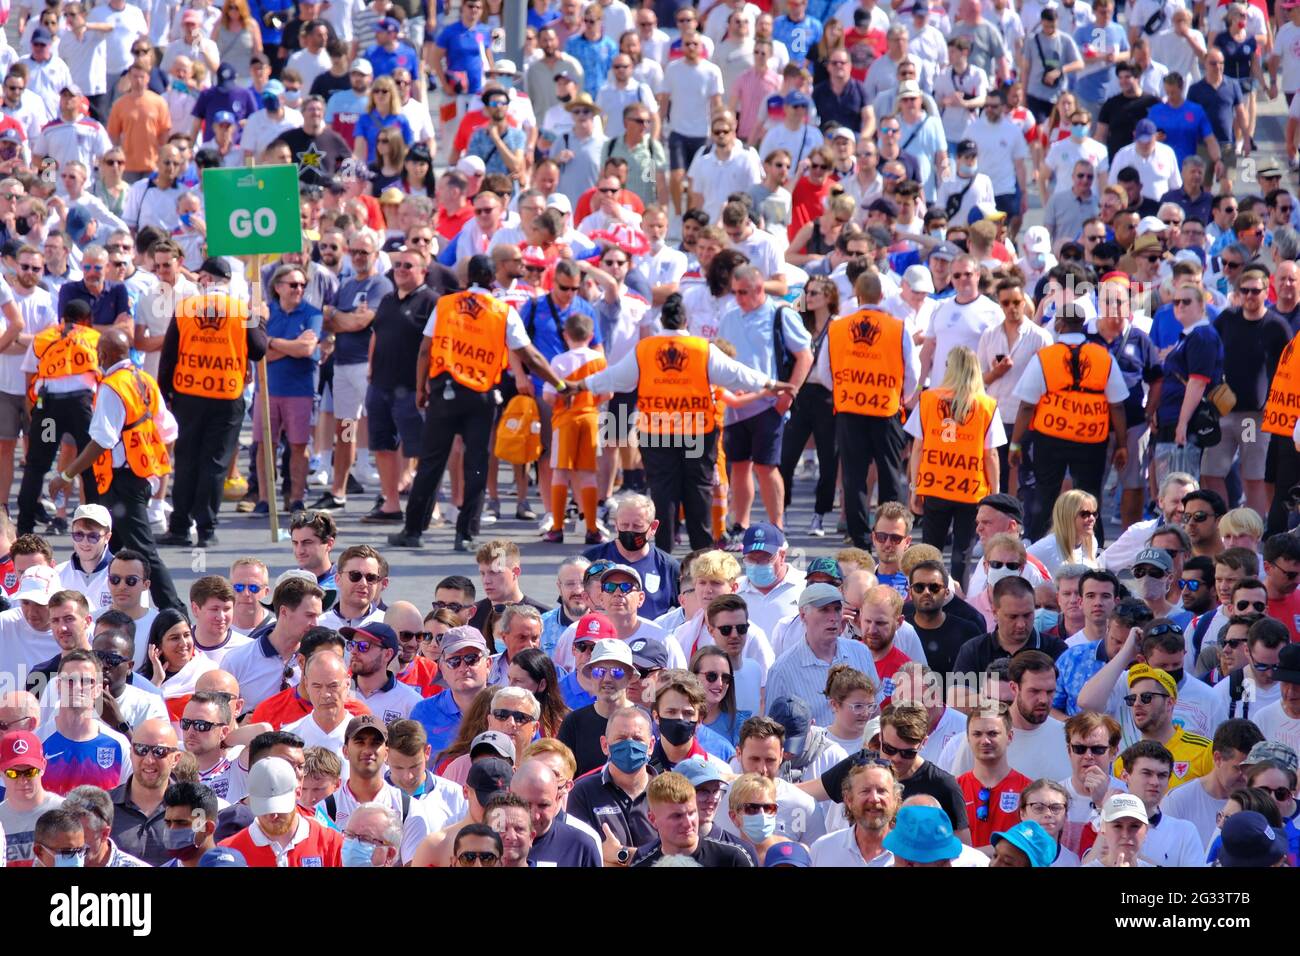 I commissari formano una barriera umana per regolare la folla che entra nella stazione della metropolitana di Wmebley Park dopo la partita di gruppo Euro 2020 Inghilterra vs Croazia. Foto Stock